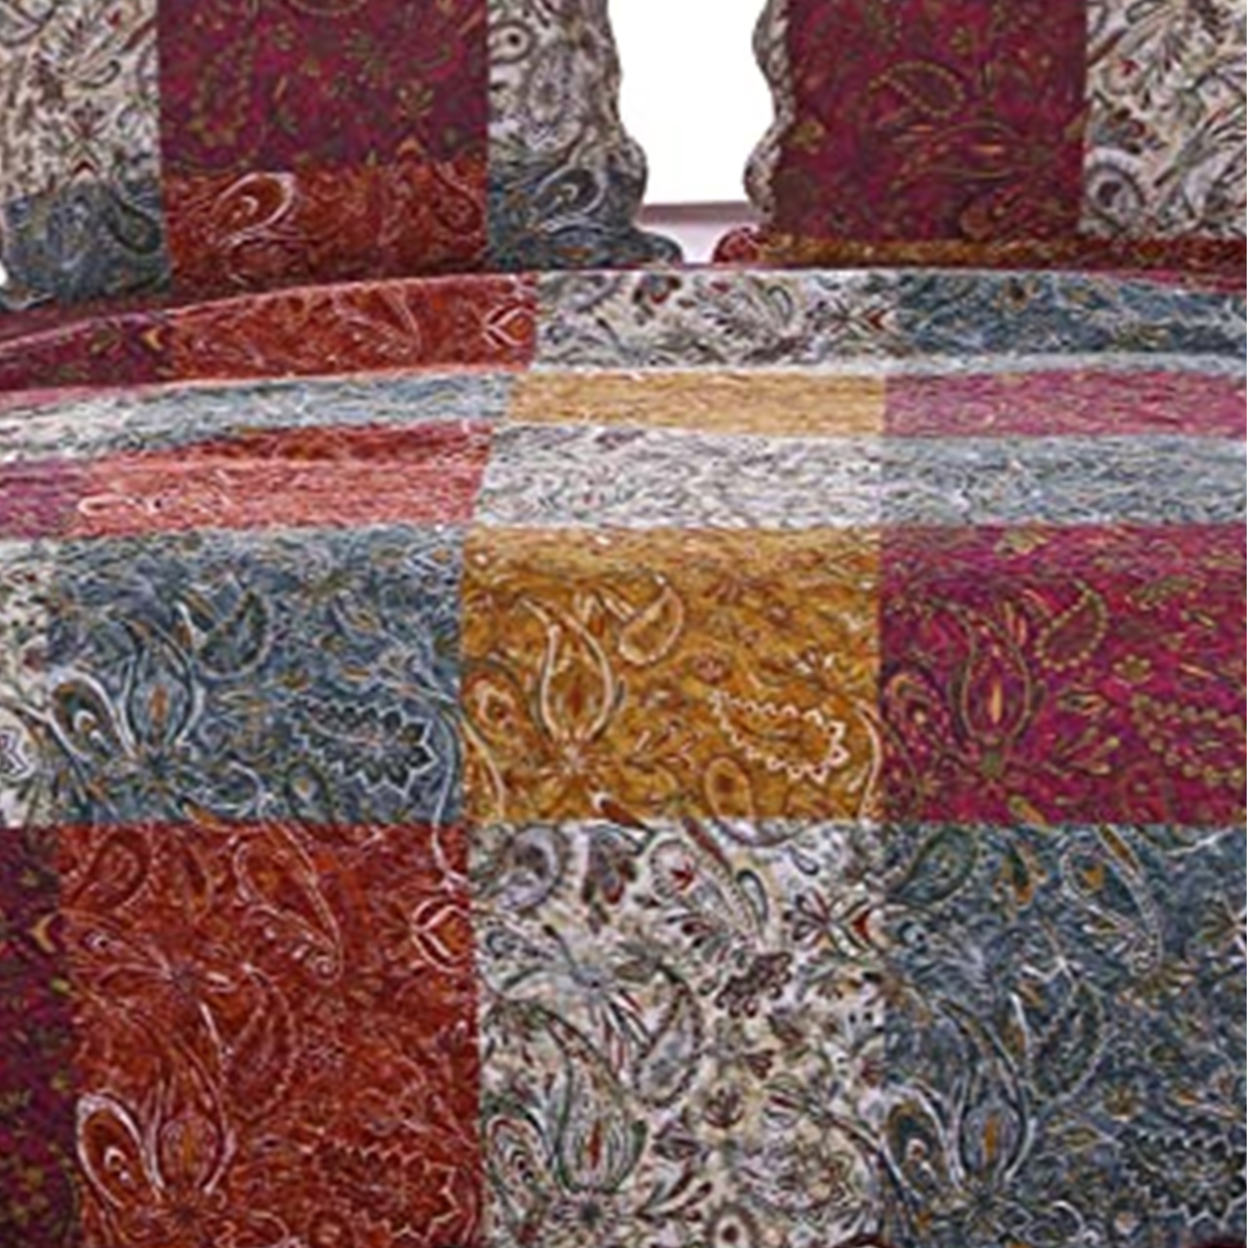 3 Piece Full Size Quilt Set, Soft Cotton, Paisley Print, Multicolor- Saltoro Sherpi